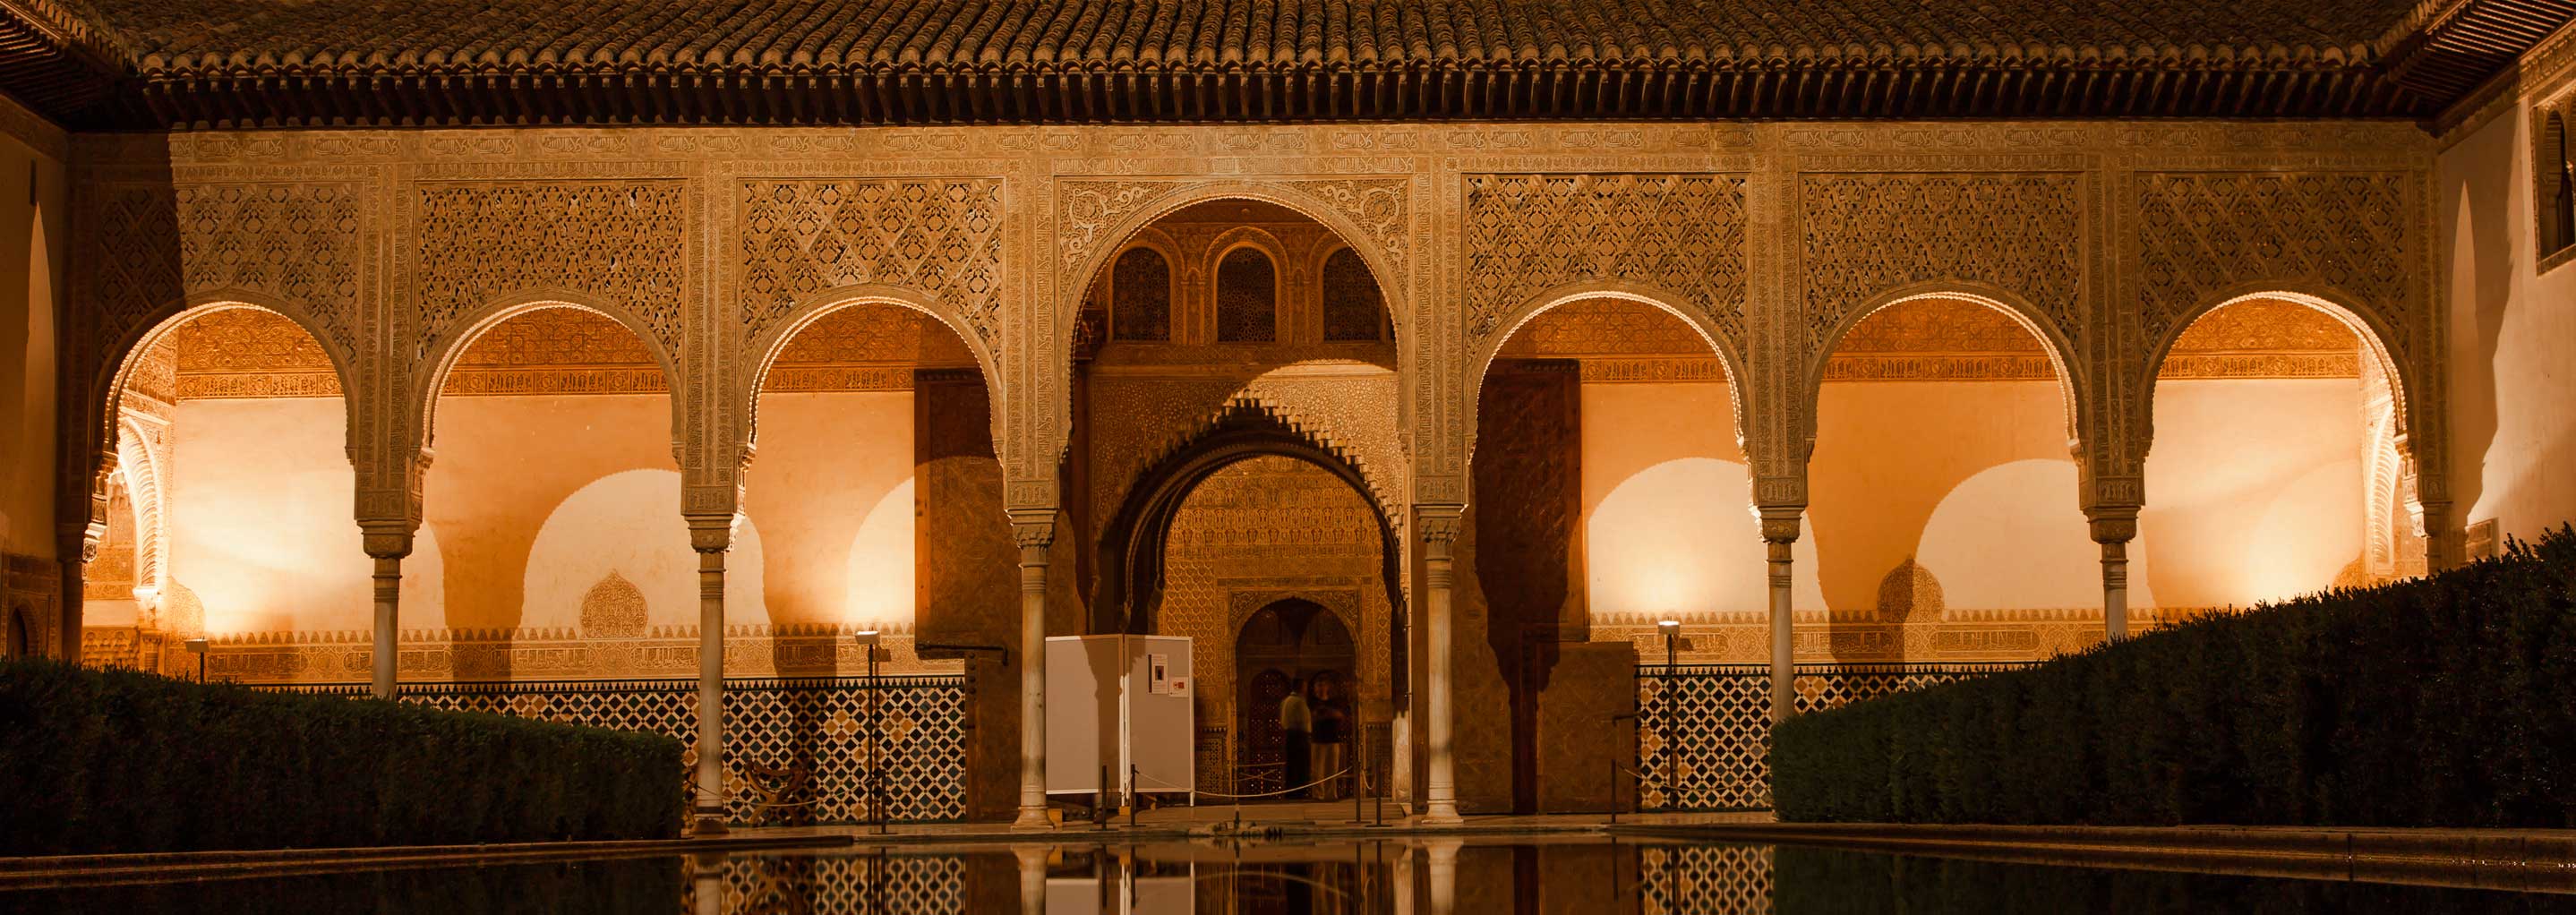 3 Leyendas que no conocías (o sí) de la Alhambra